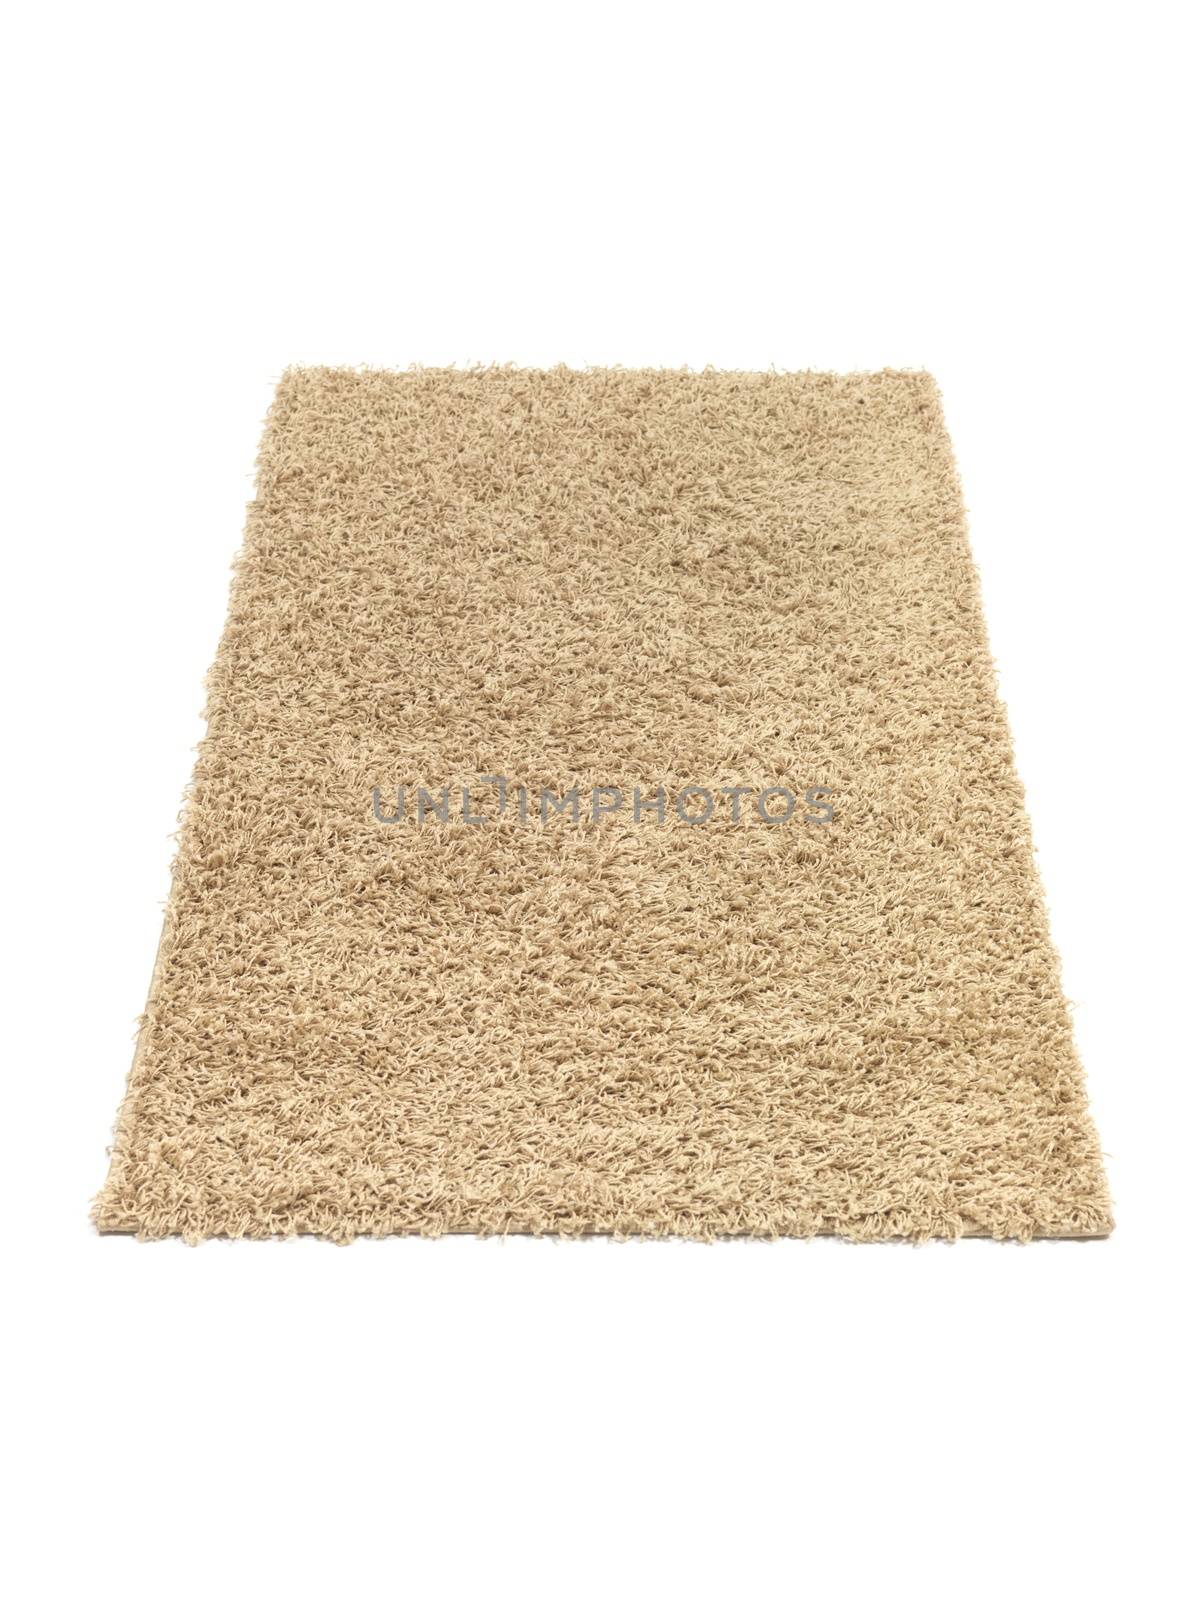 A floor rug isolated on a plain background